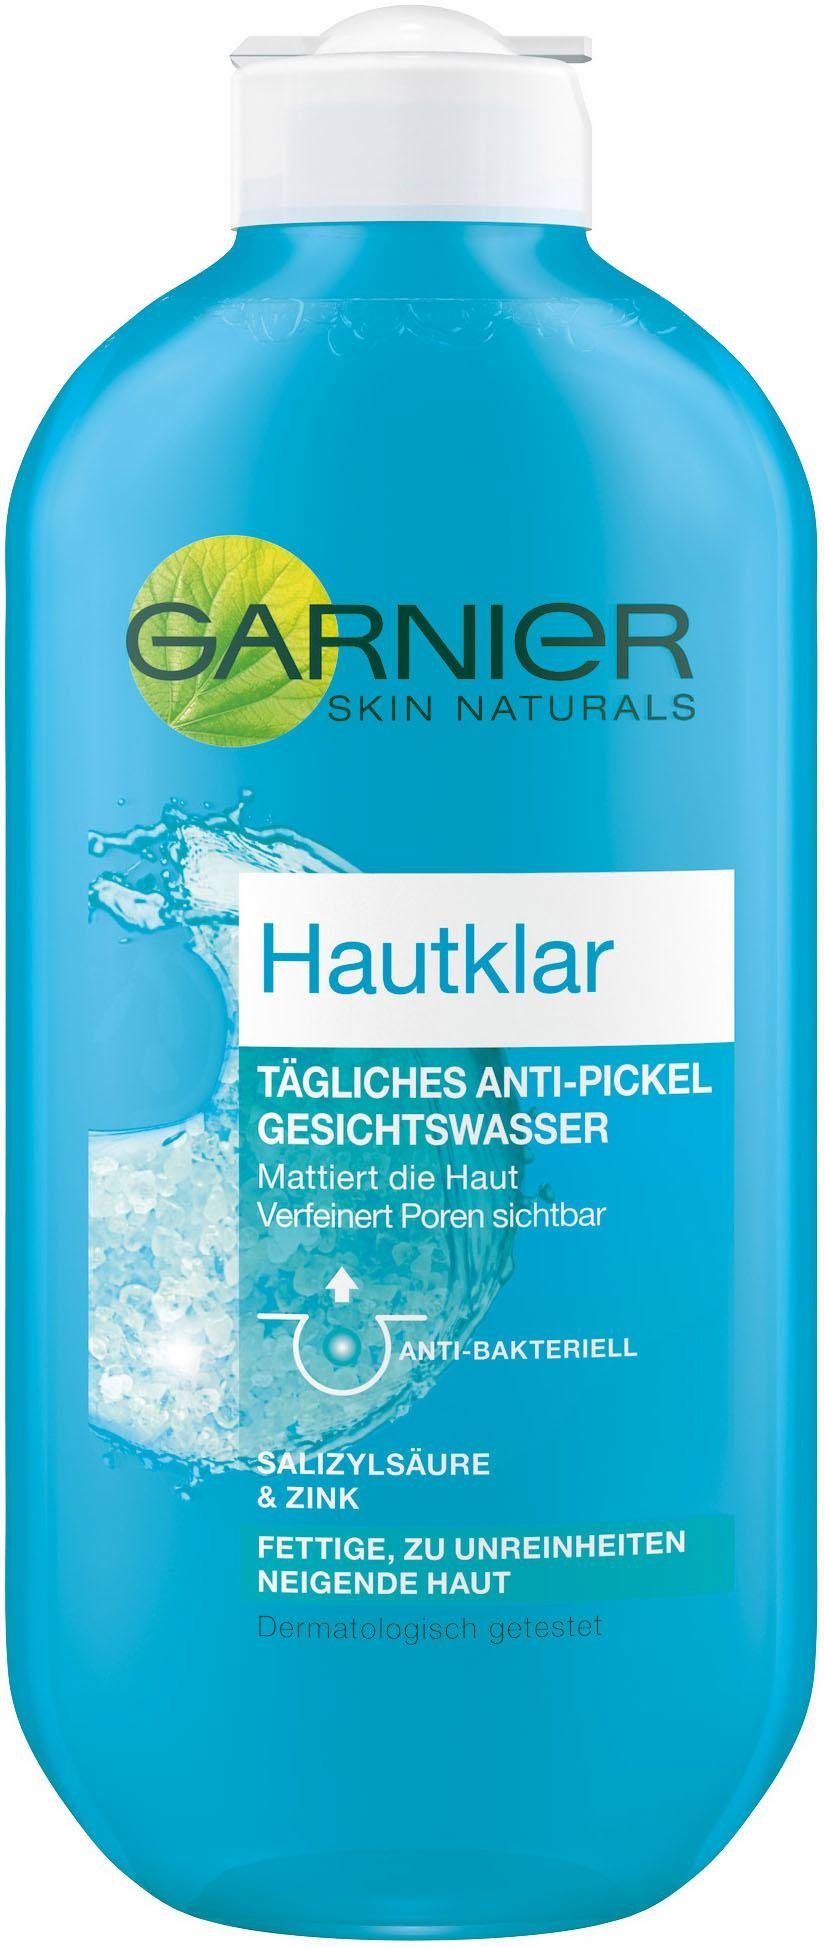 Hautklar, Anti-Pickel GARNIER Gesichtswasser